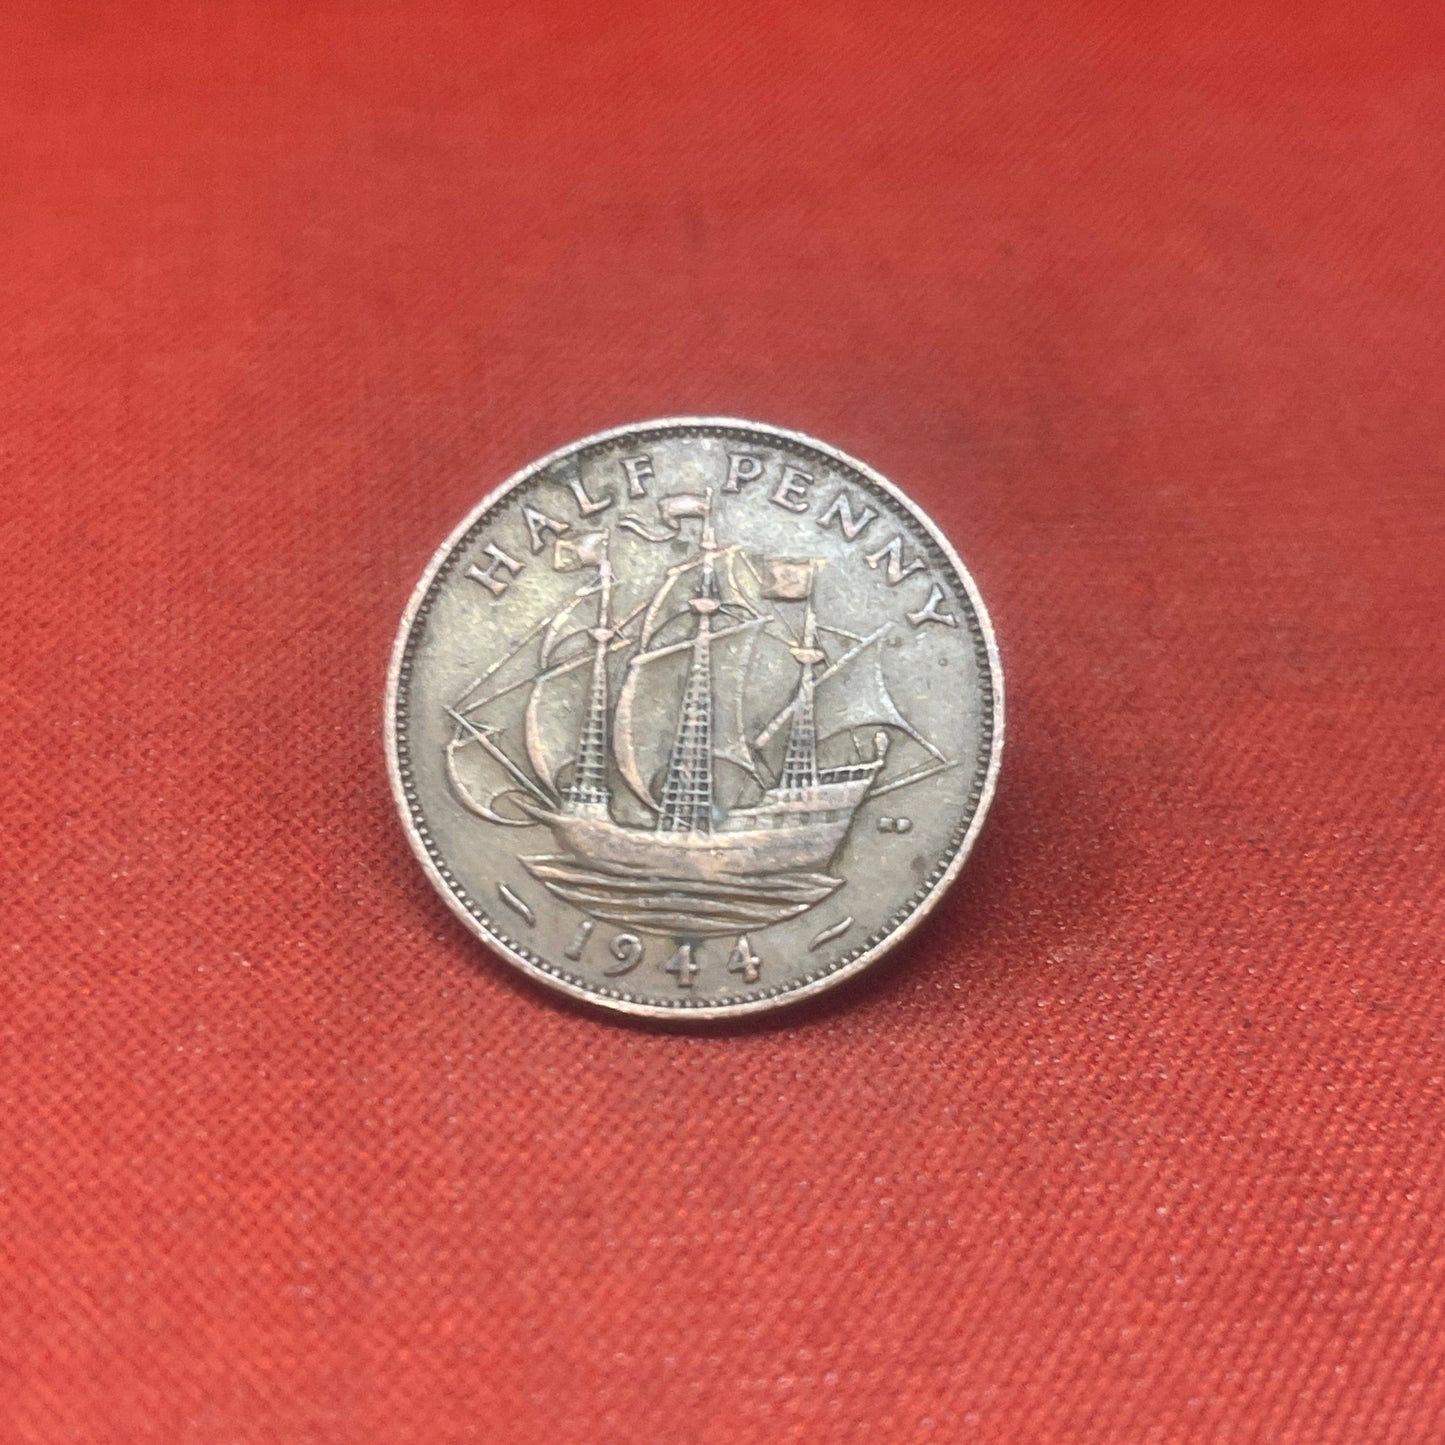 King George VI 1942 Half Penny